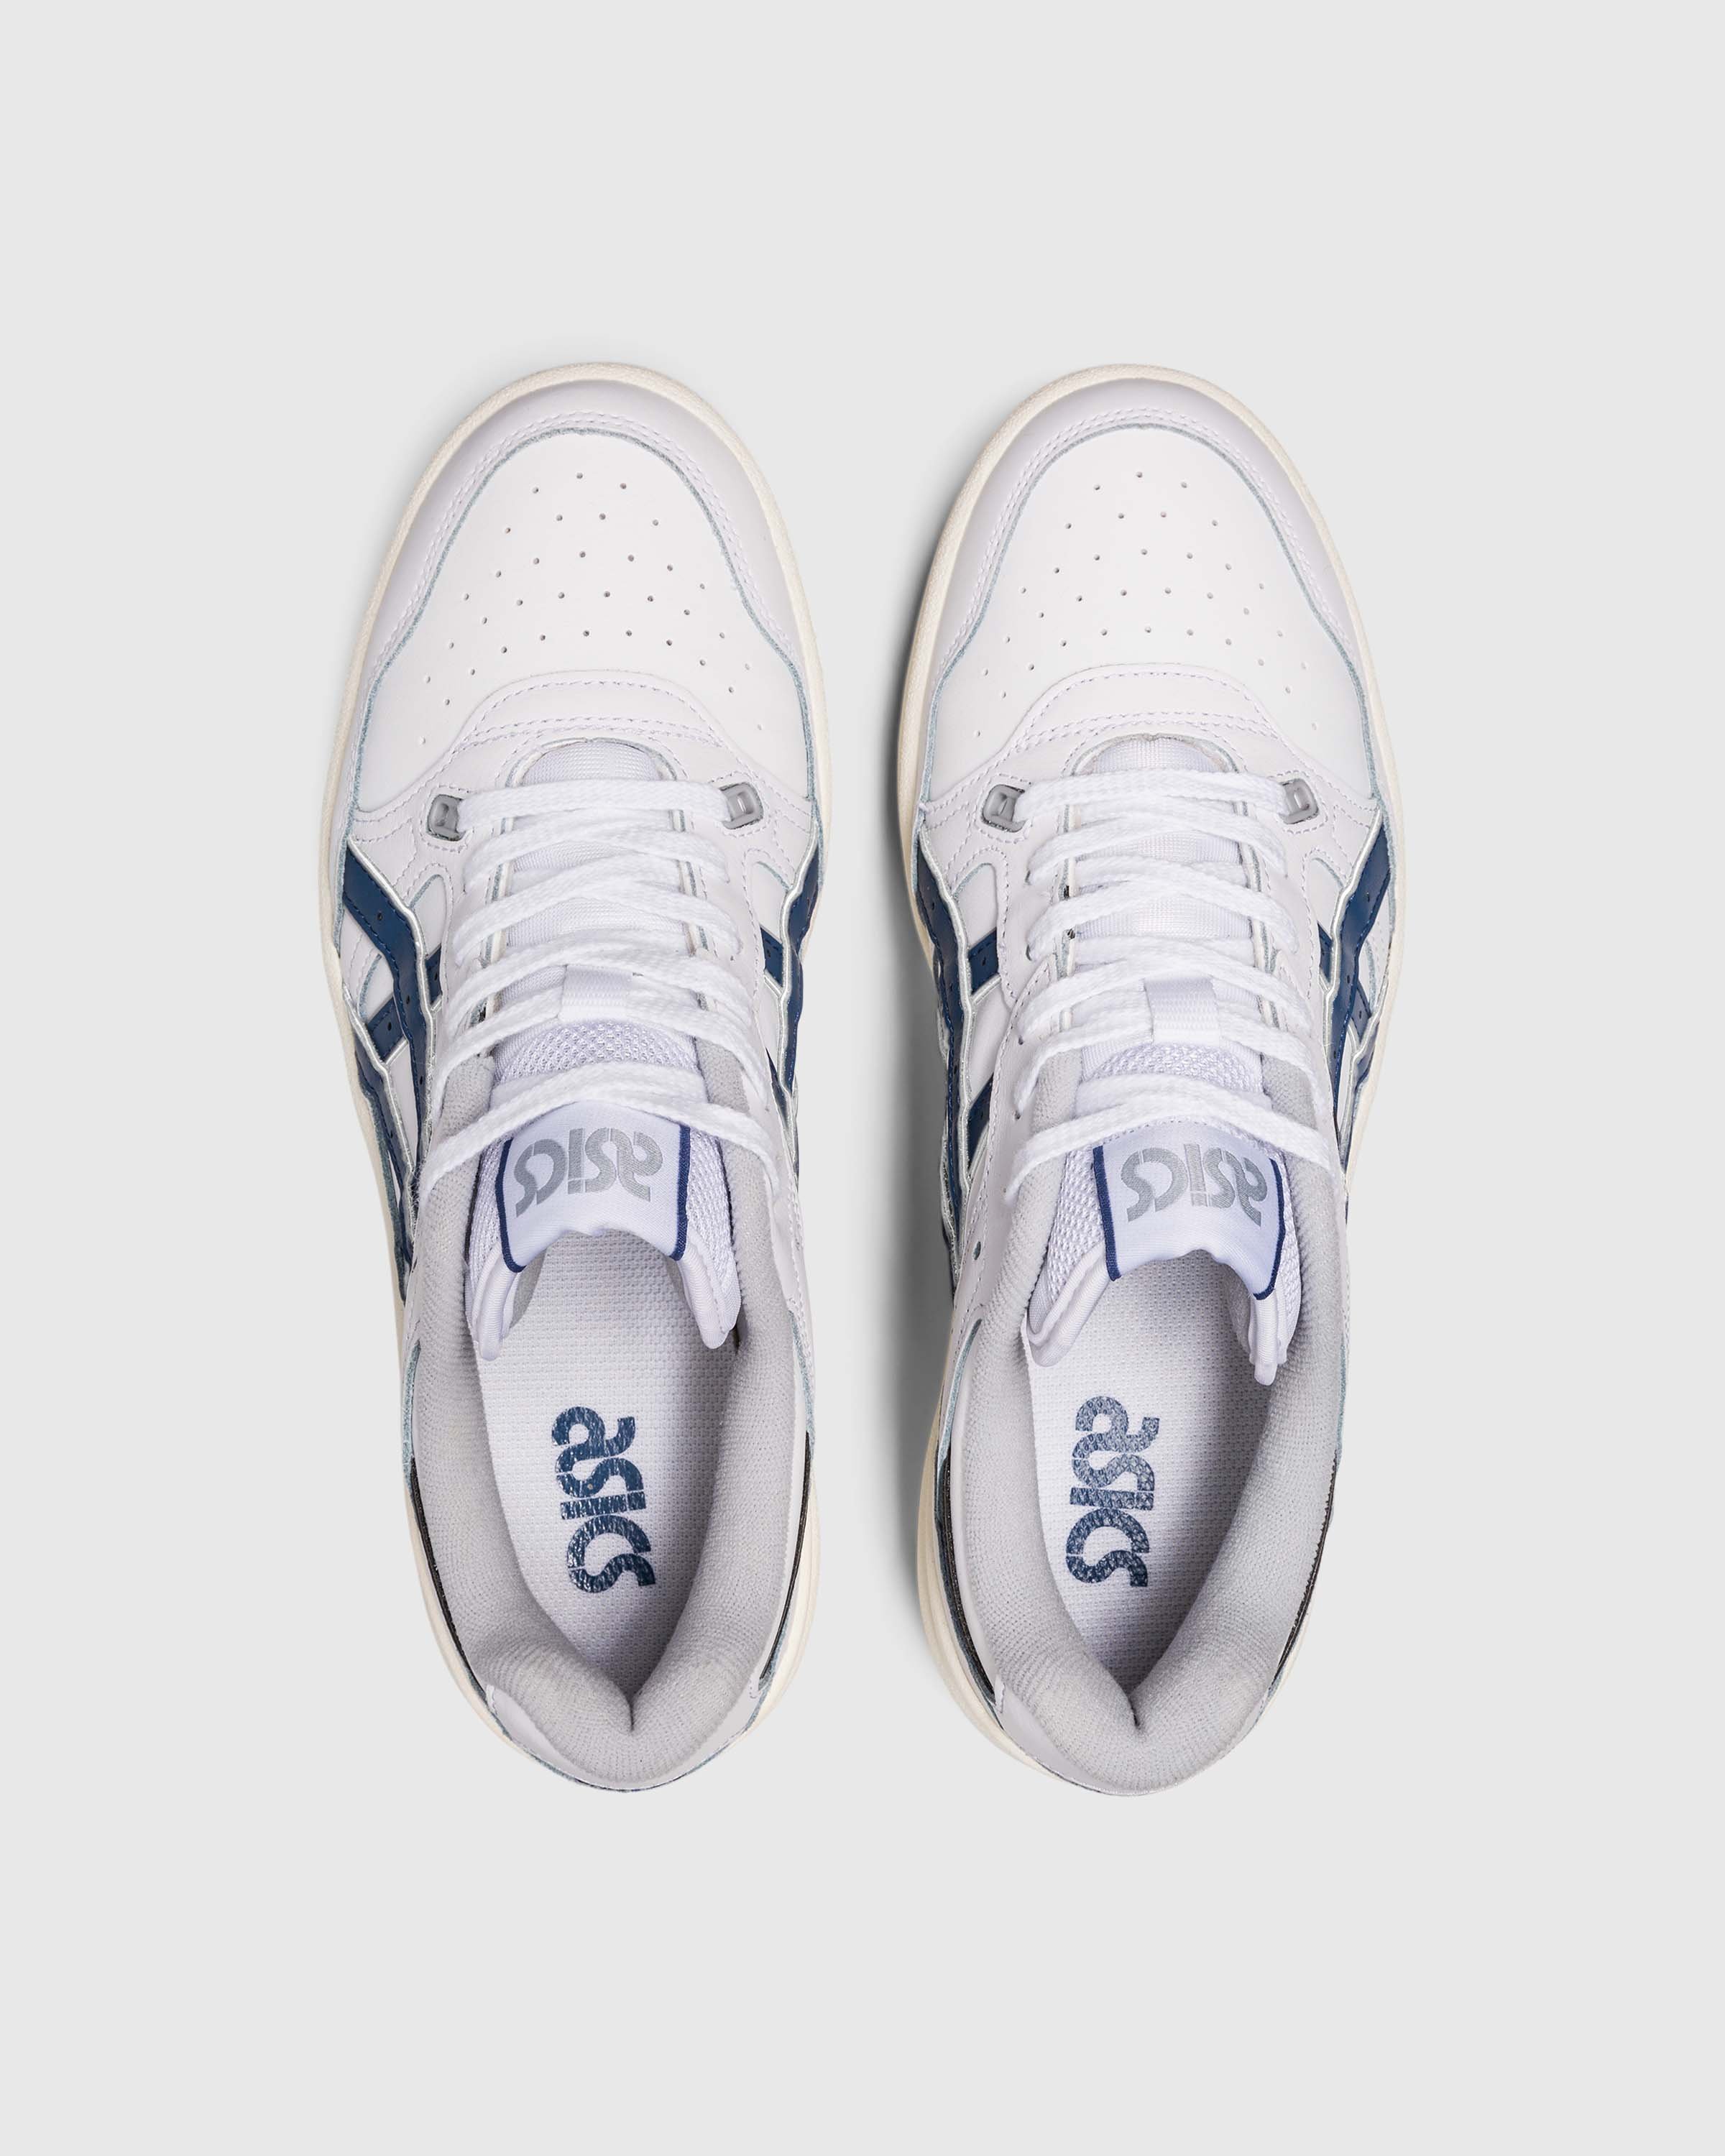 asics - EX89 - Footwear - White - Image 5